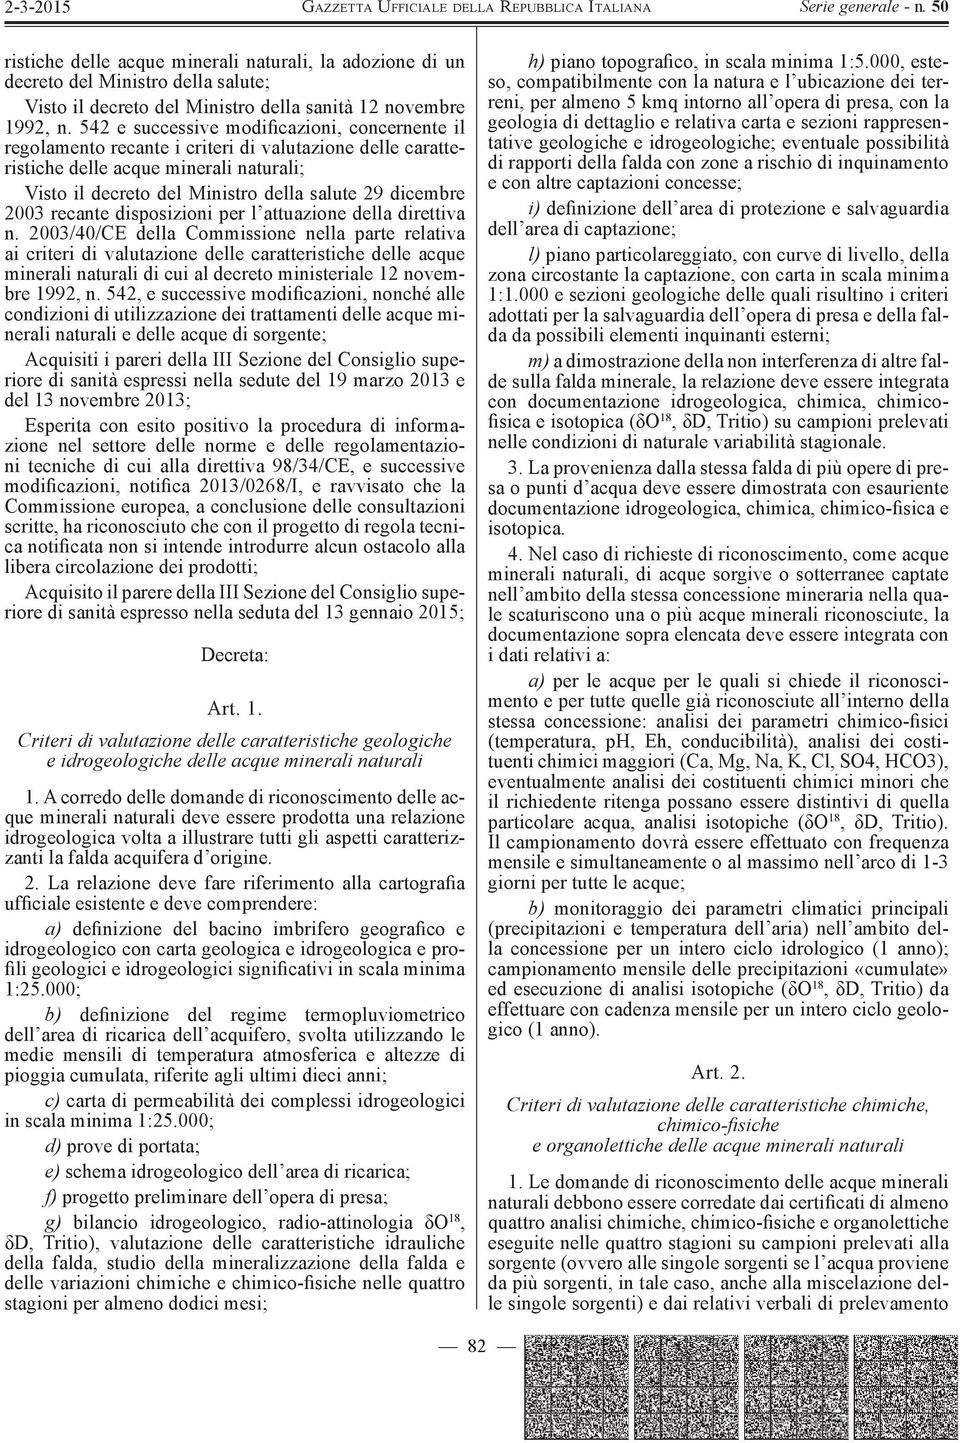 2003 recante disposizioni per l attuazione della direttiva n.